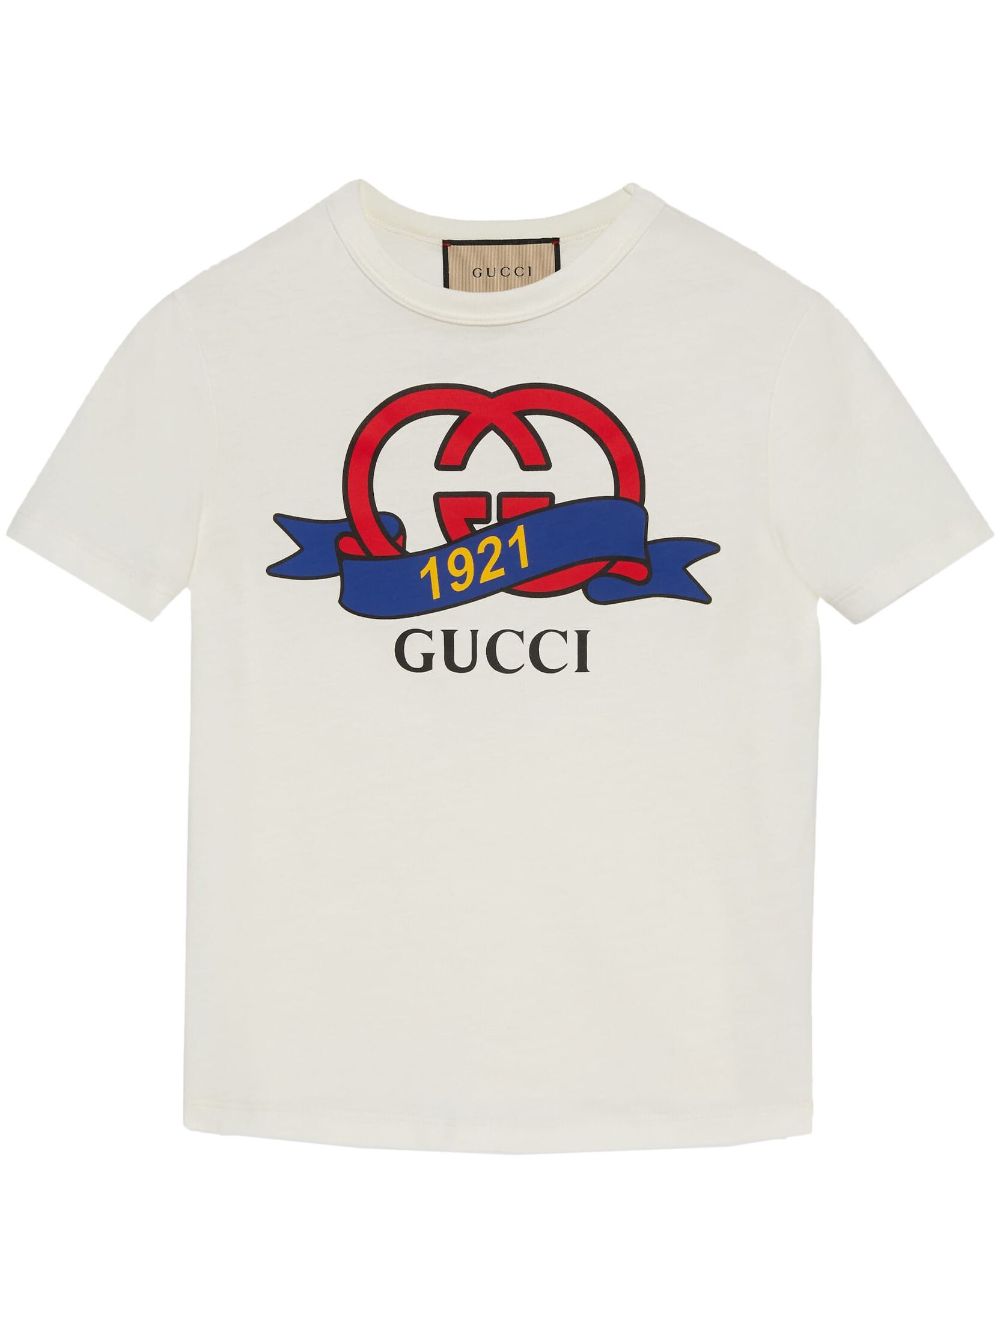 Gucci 1921 Interlocking G cotton T-shirt - White von Gucci